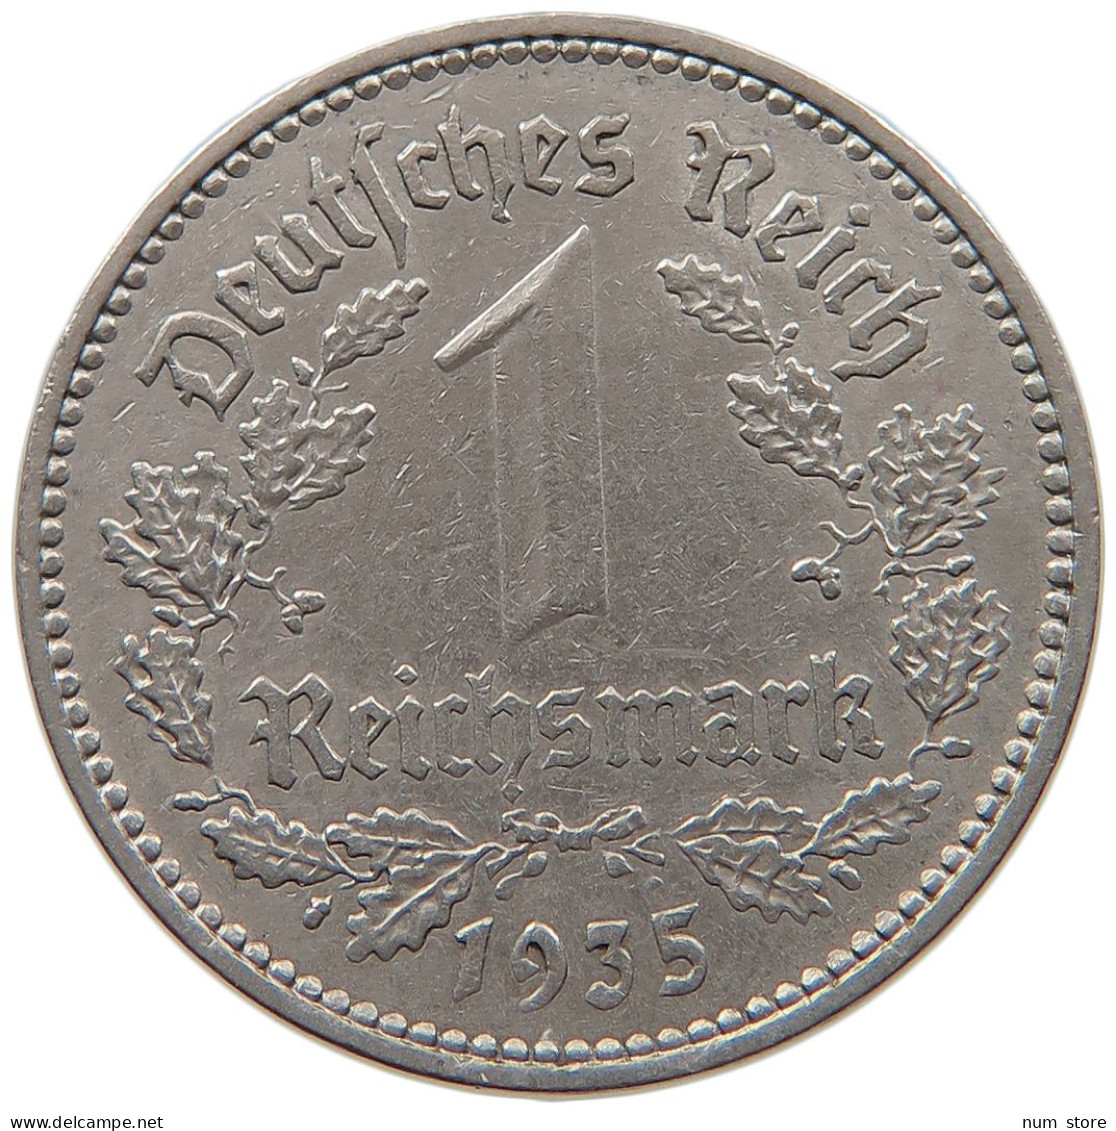 DRITTES REICH MARK 1935 A  #MA 099342 - 1 Reichsmark